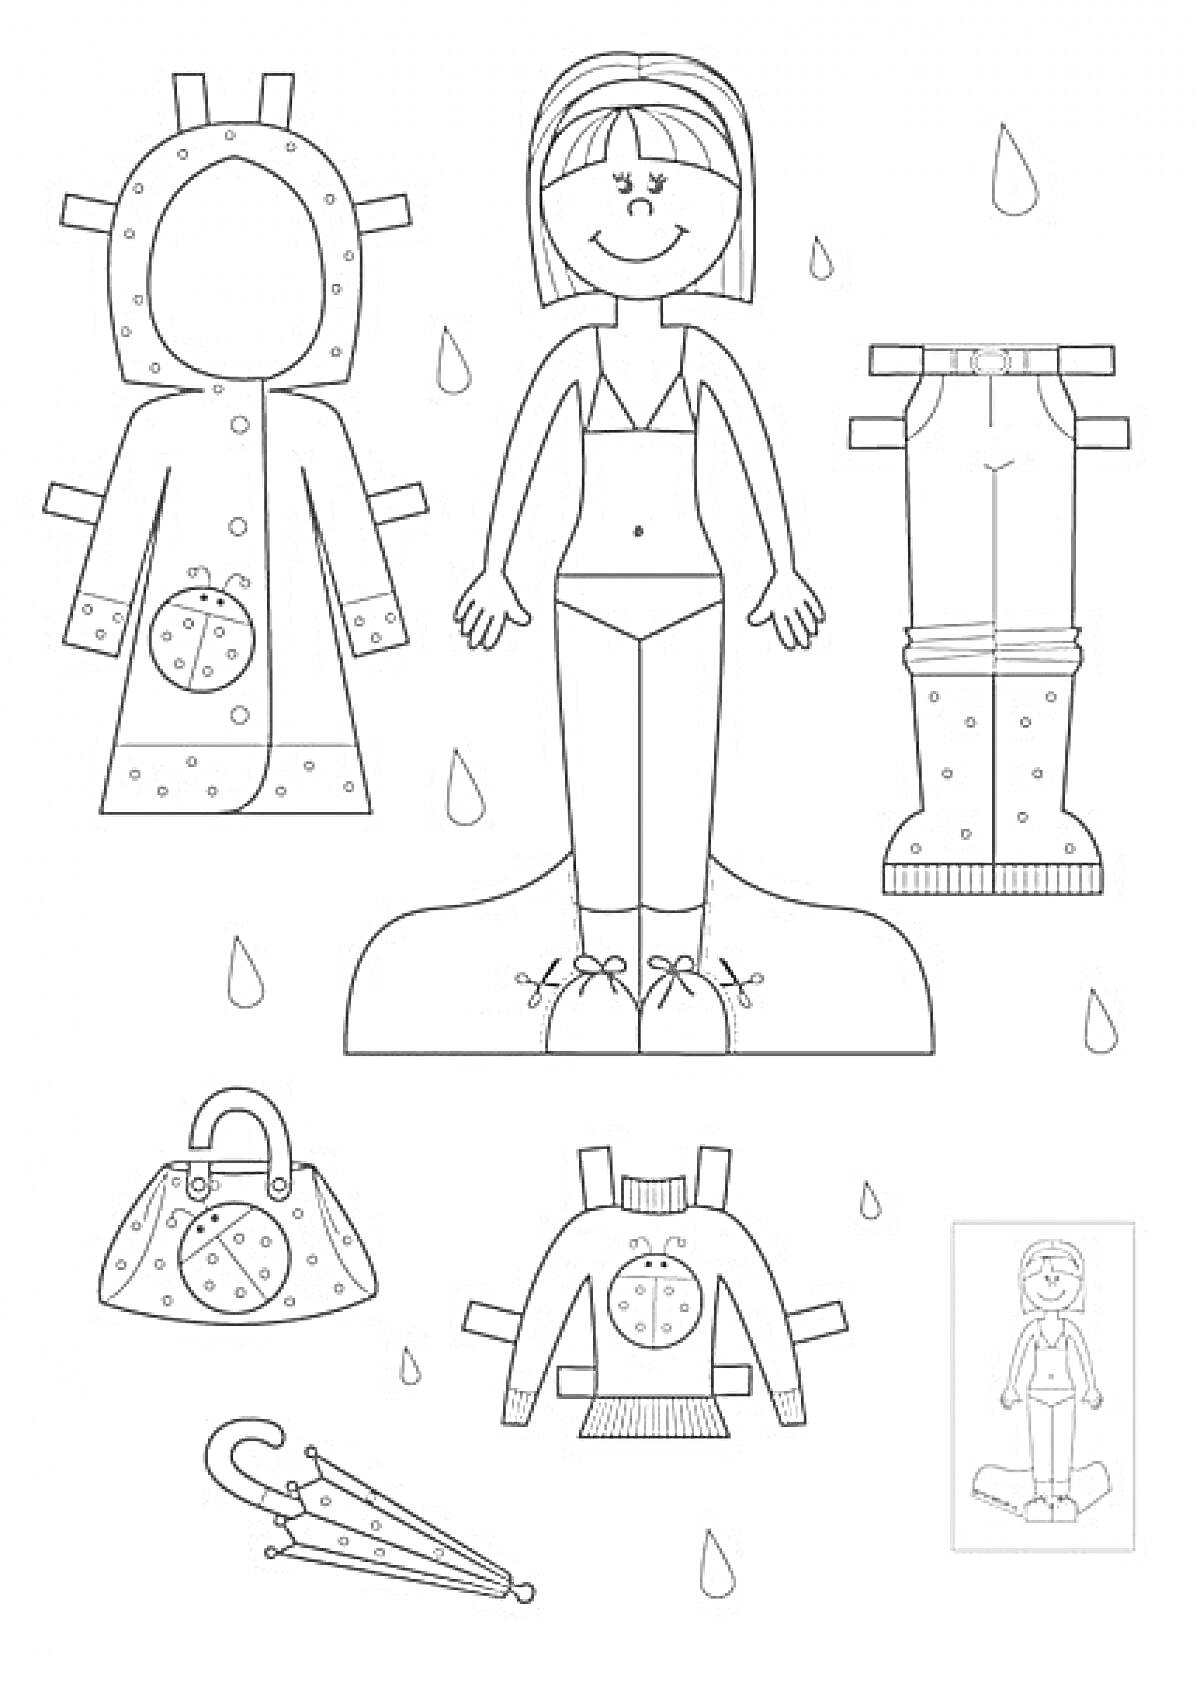 Бумажная кукла с плащом, кофтой, брюками, сумкой и зонтом